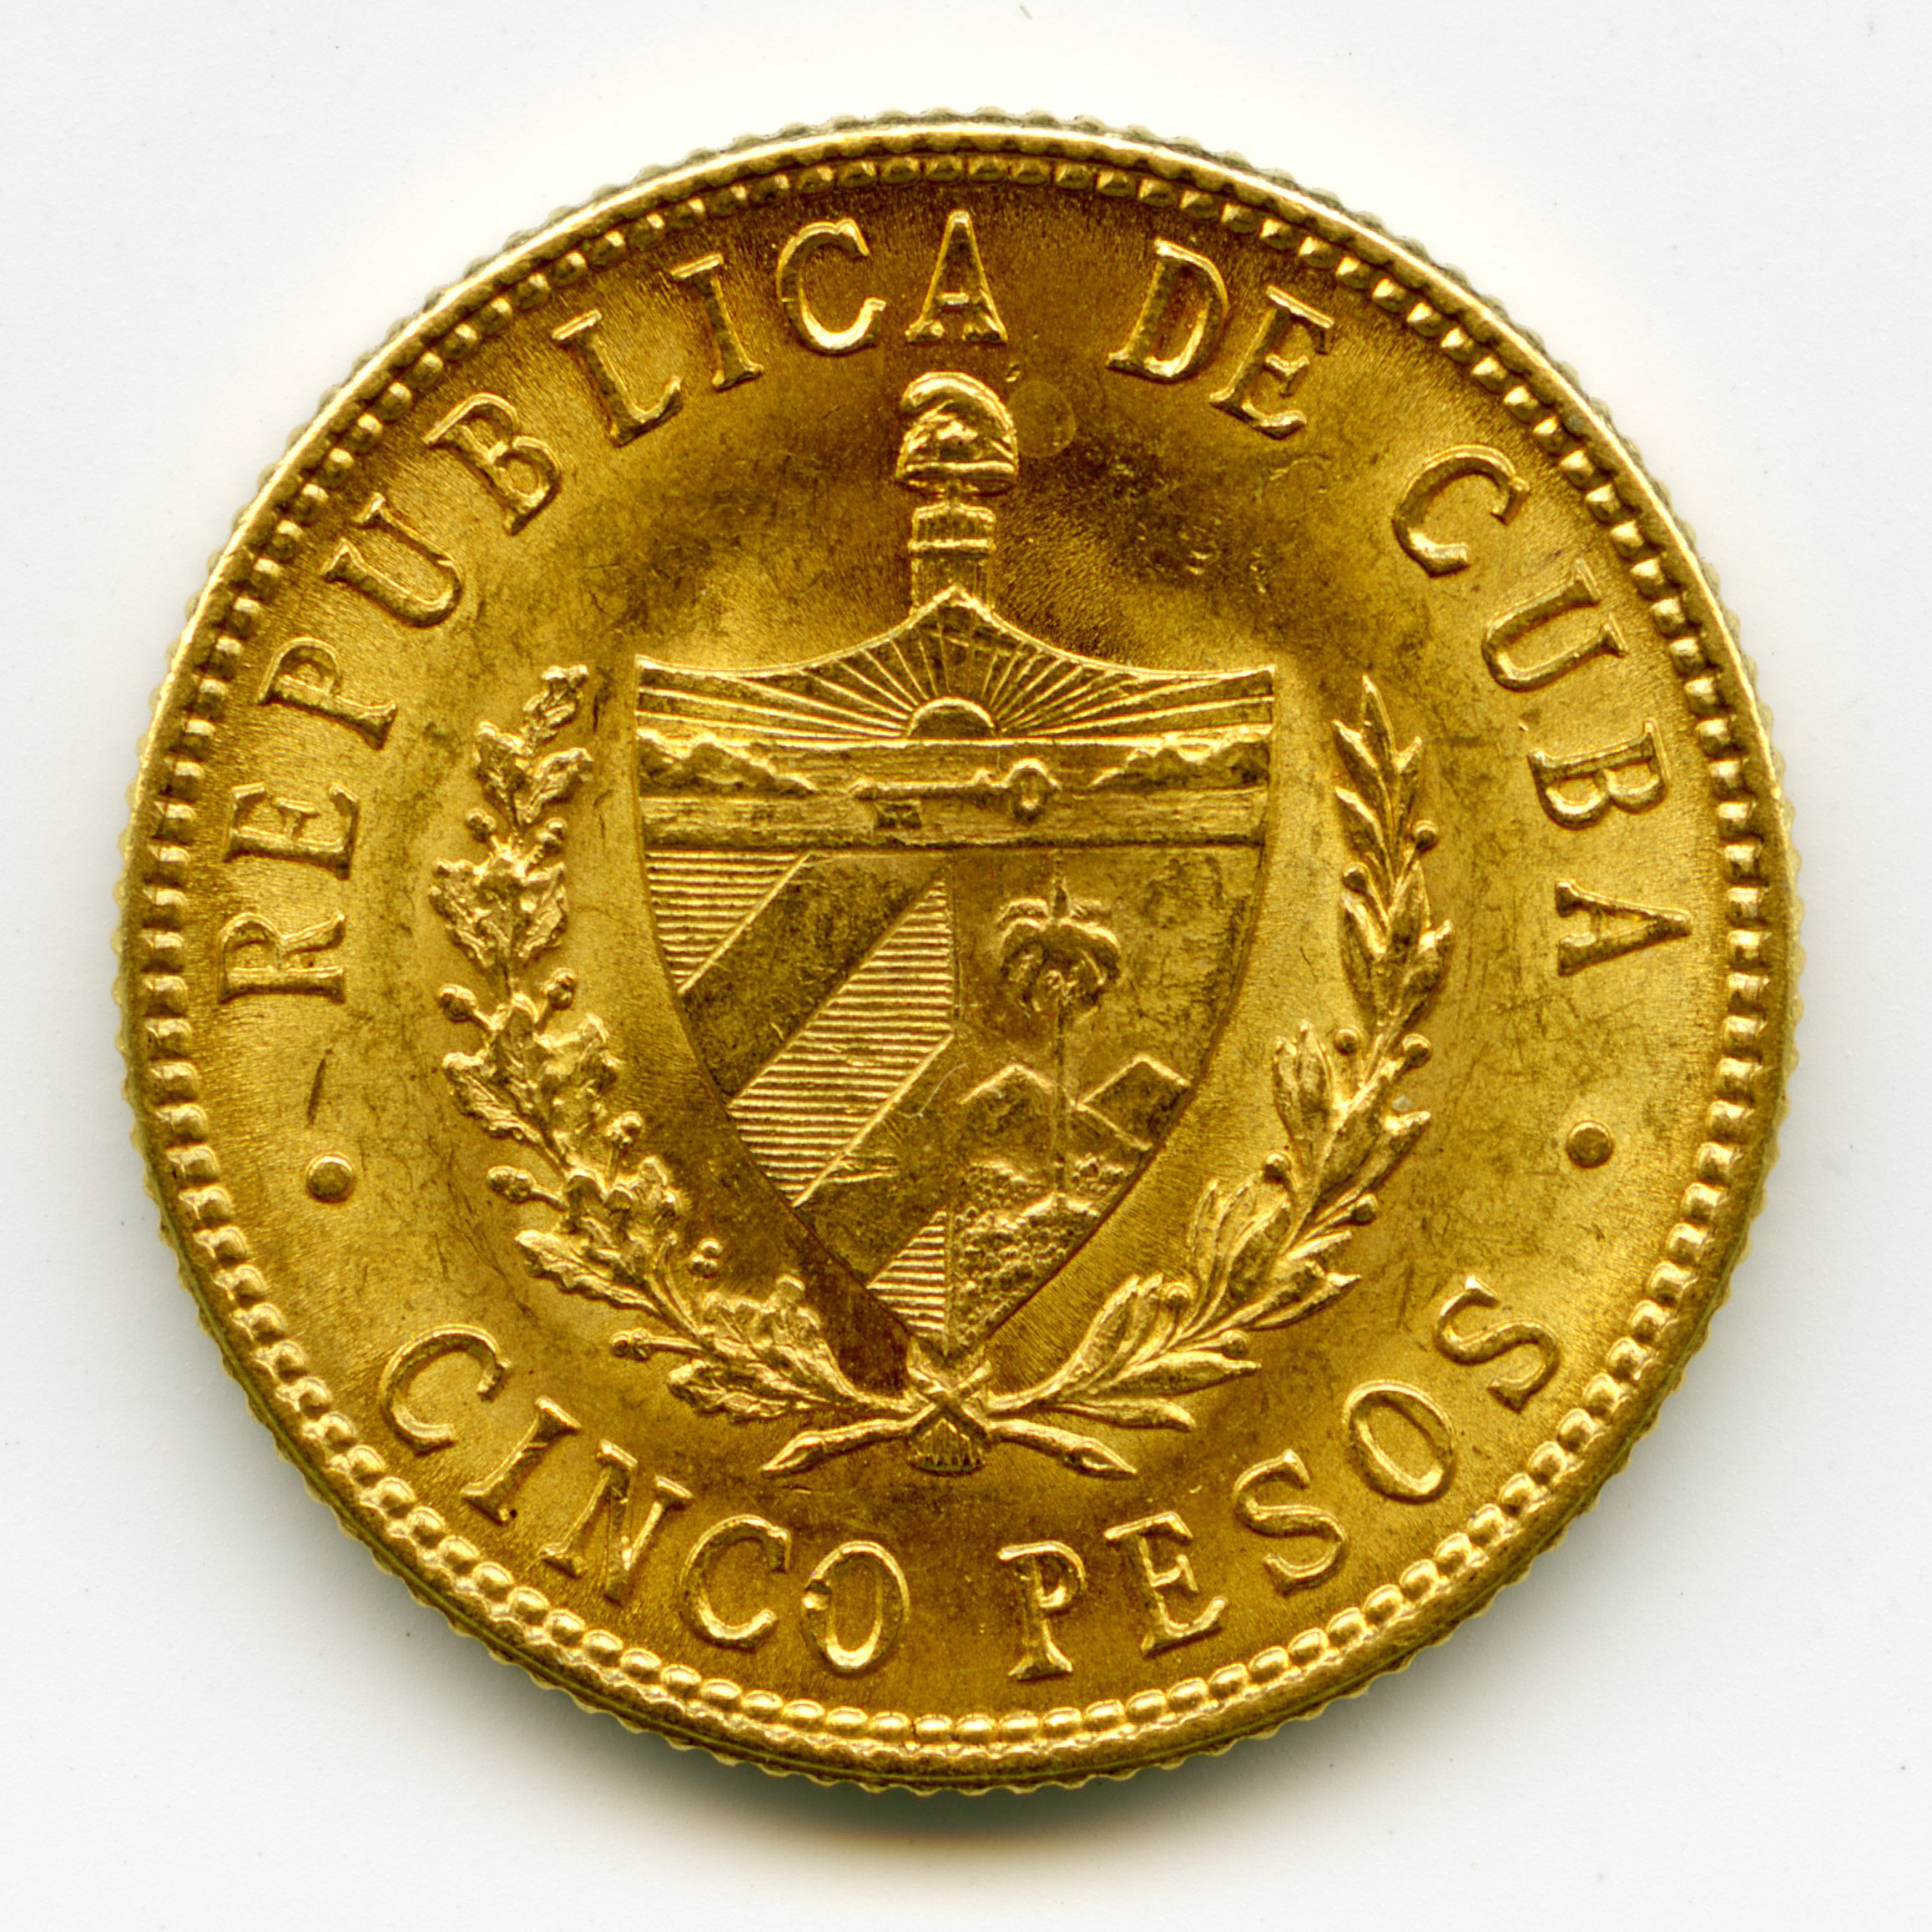 Cuba - 5 Pesos - 1915 revers